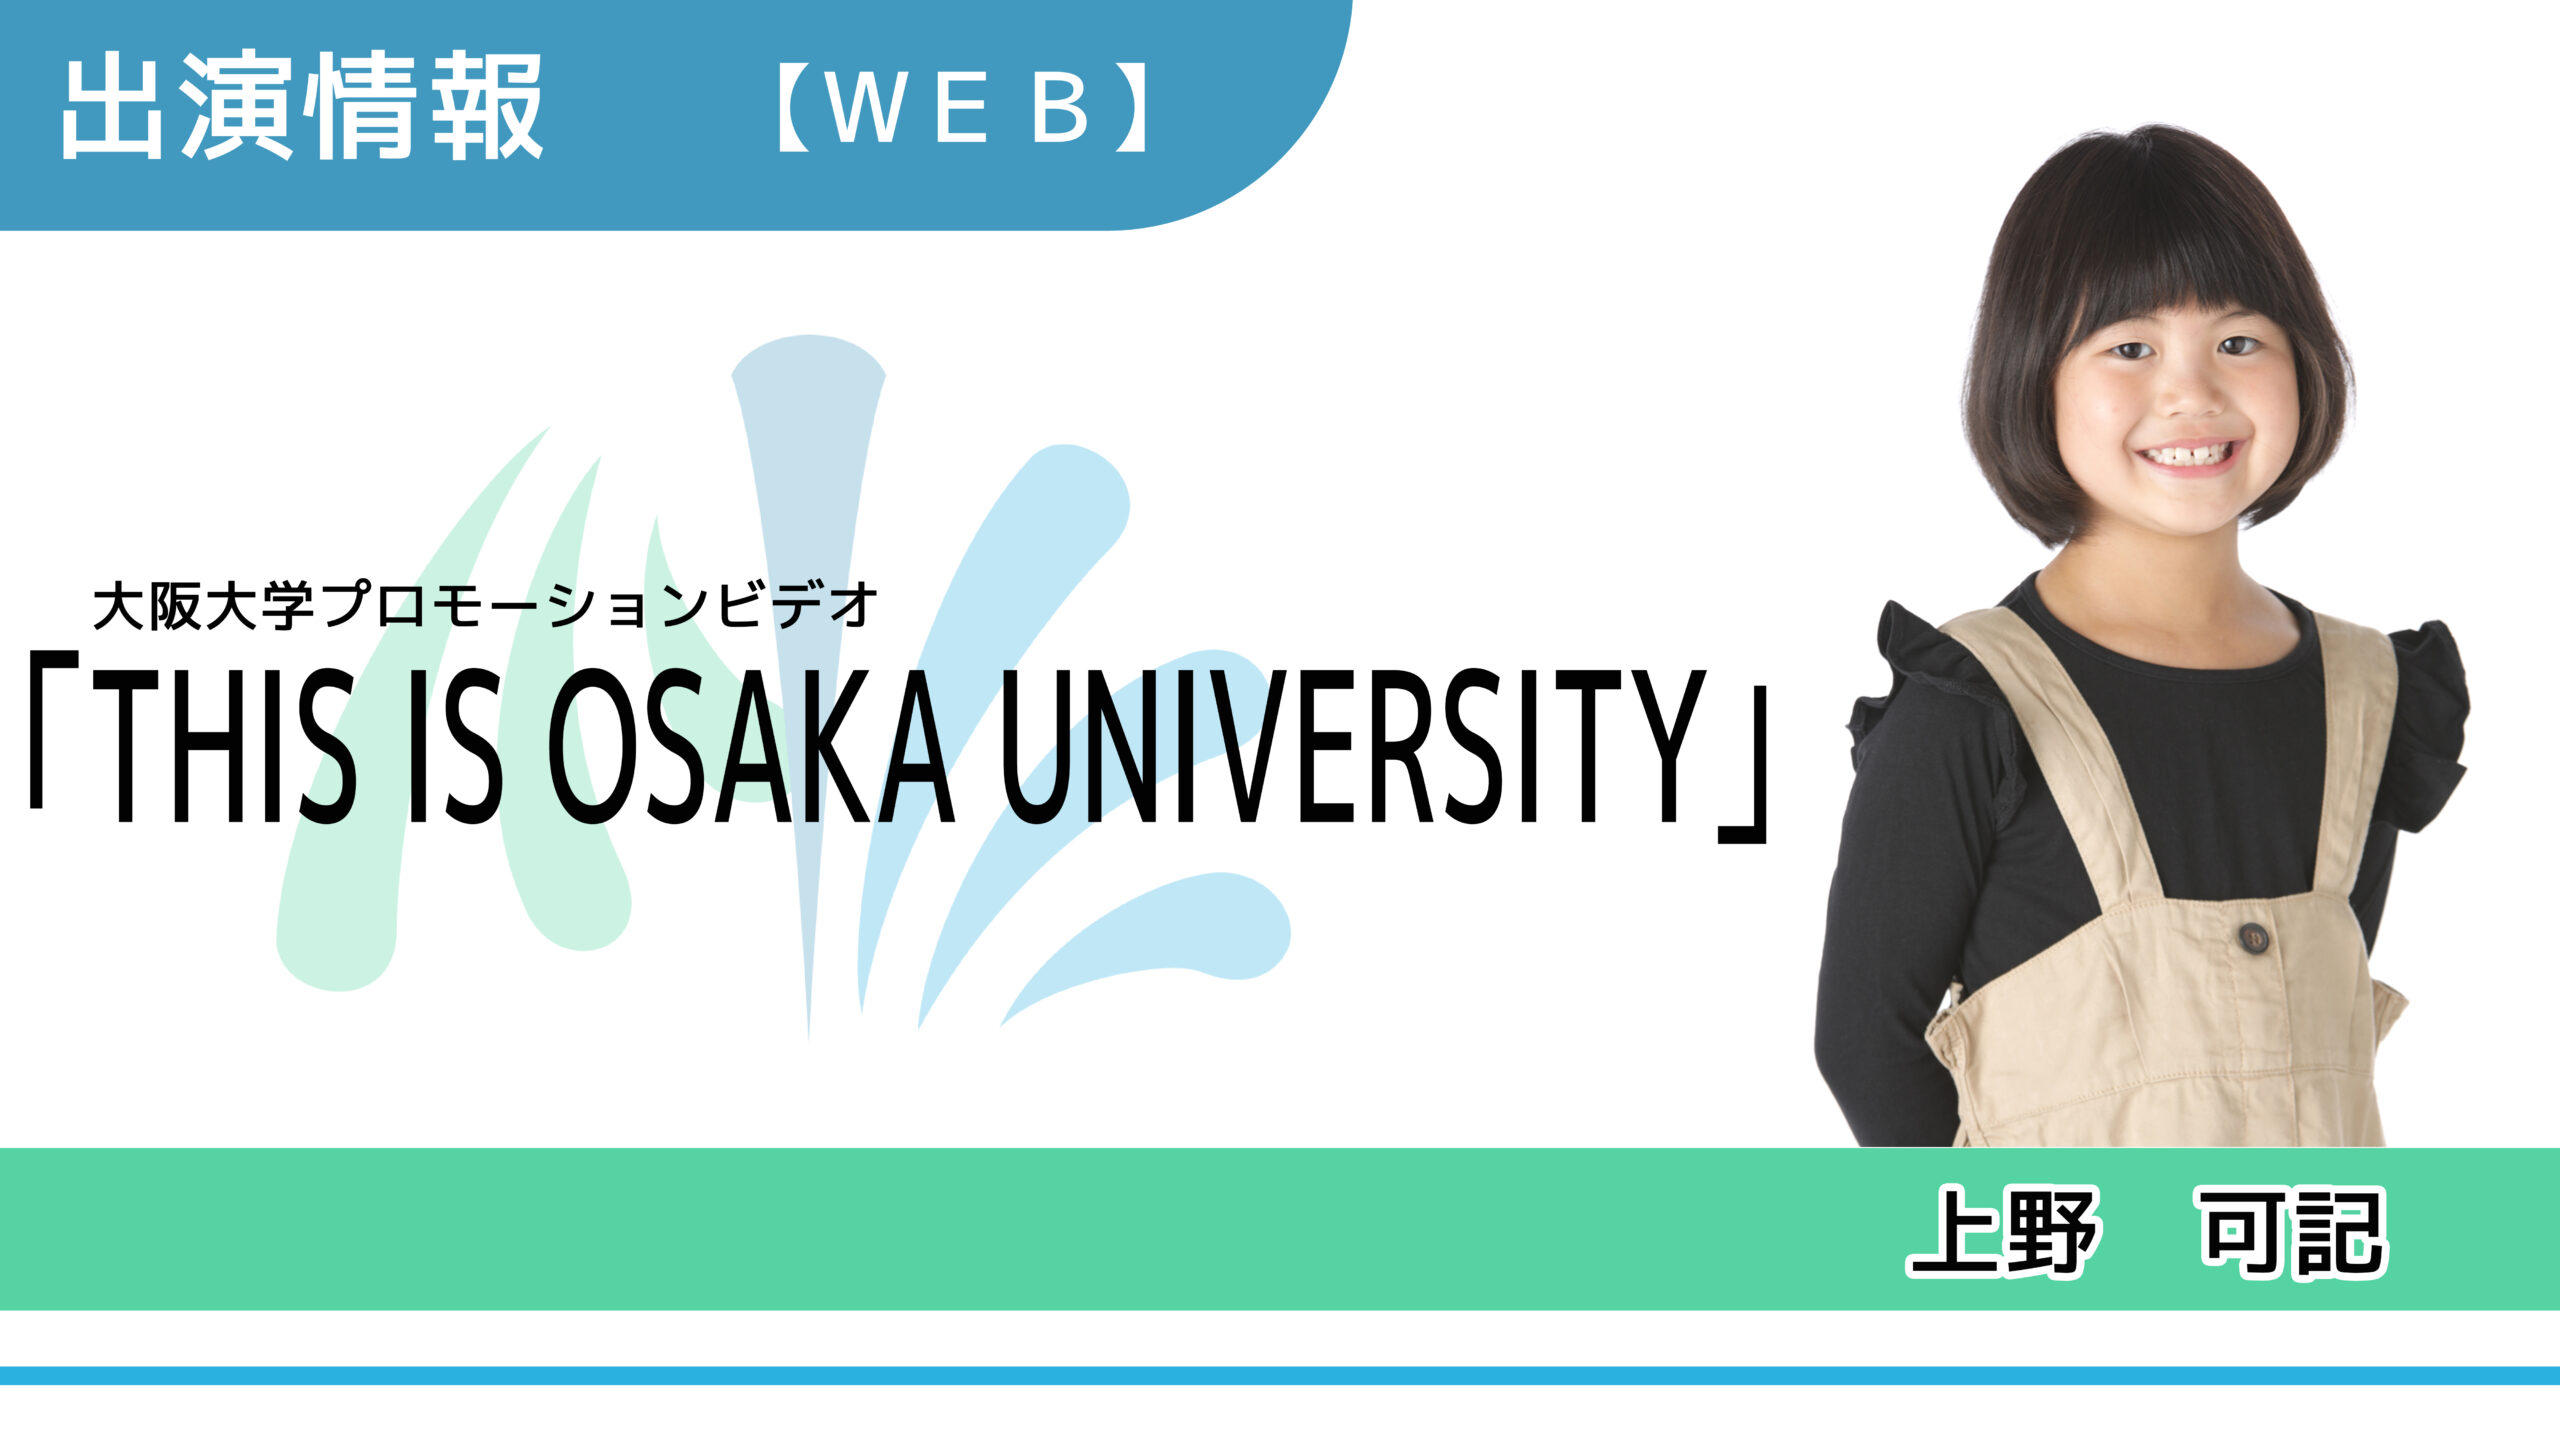 【出演情報】上野可記 / THIS IS OSAKA UNIVERSITY（大阪大学プロモーションビデオ）　出演